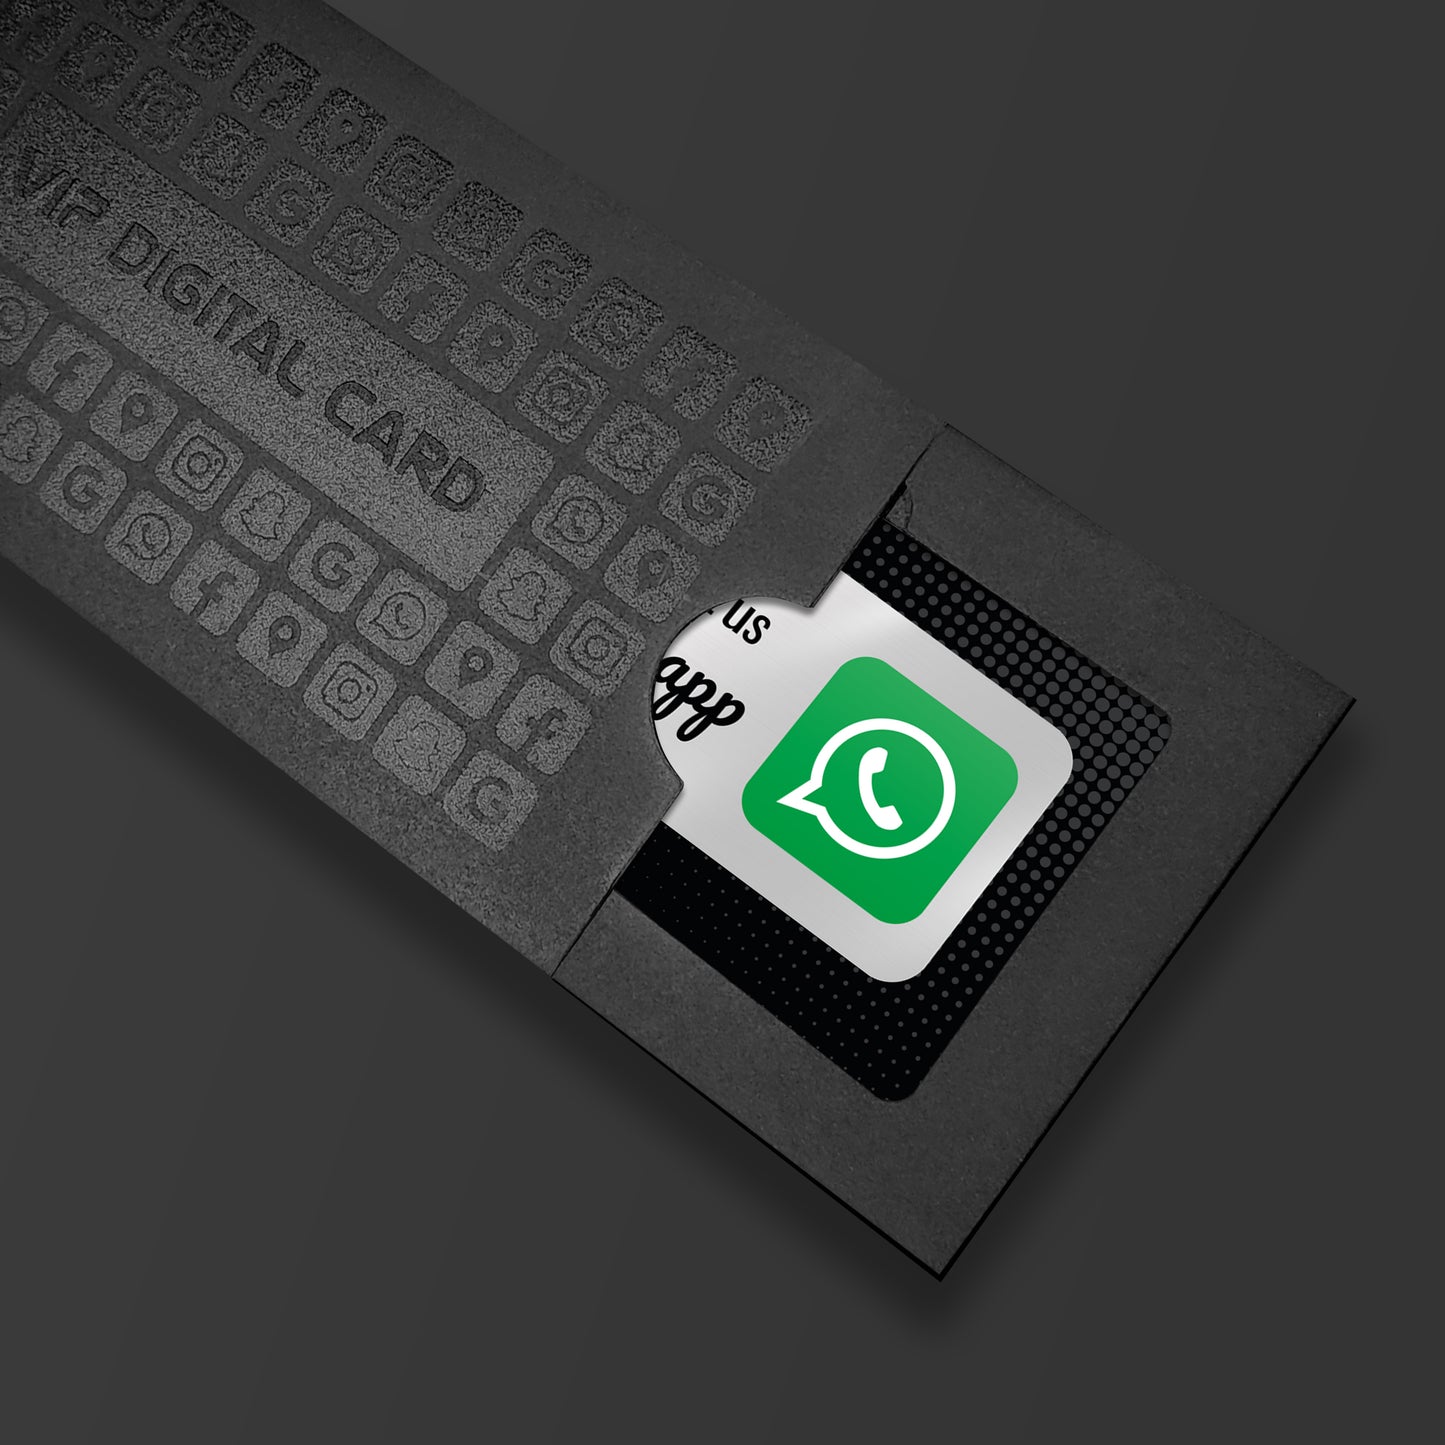 Whatsapp NFC Card